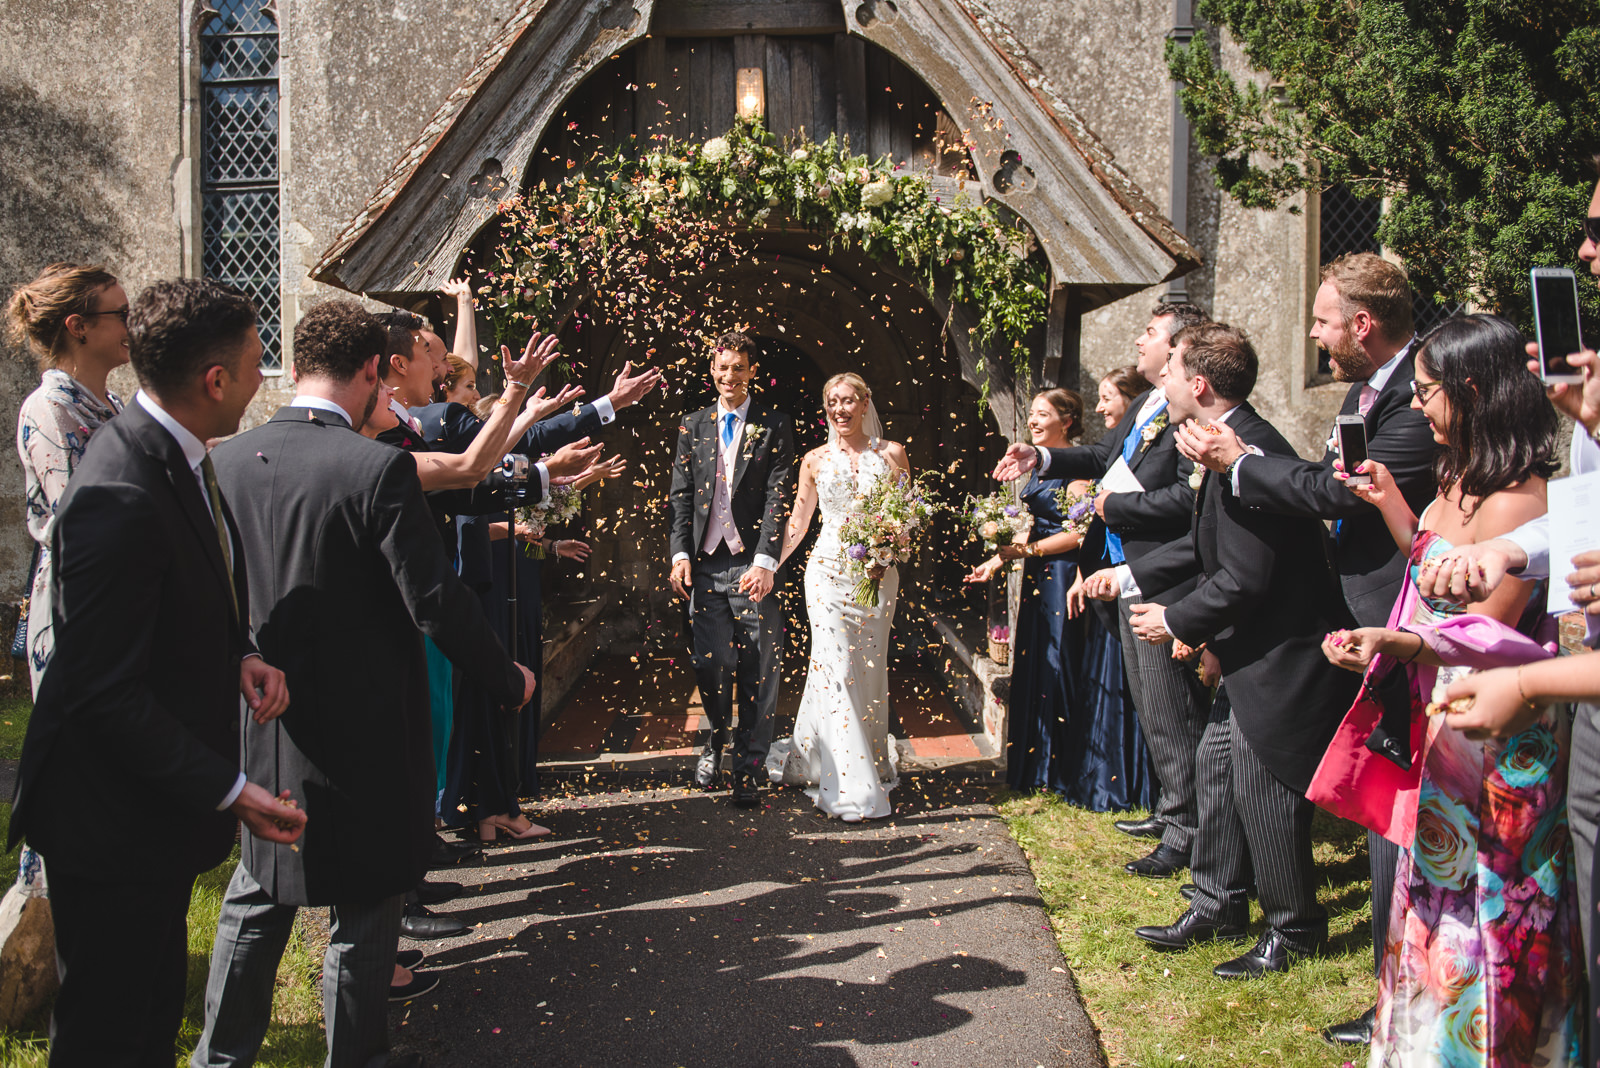 Throwing confetti after a village church wedding.